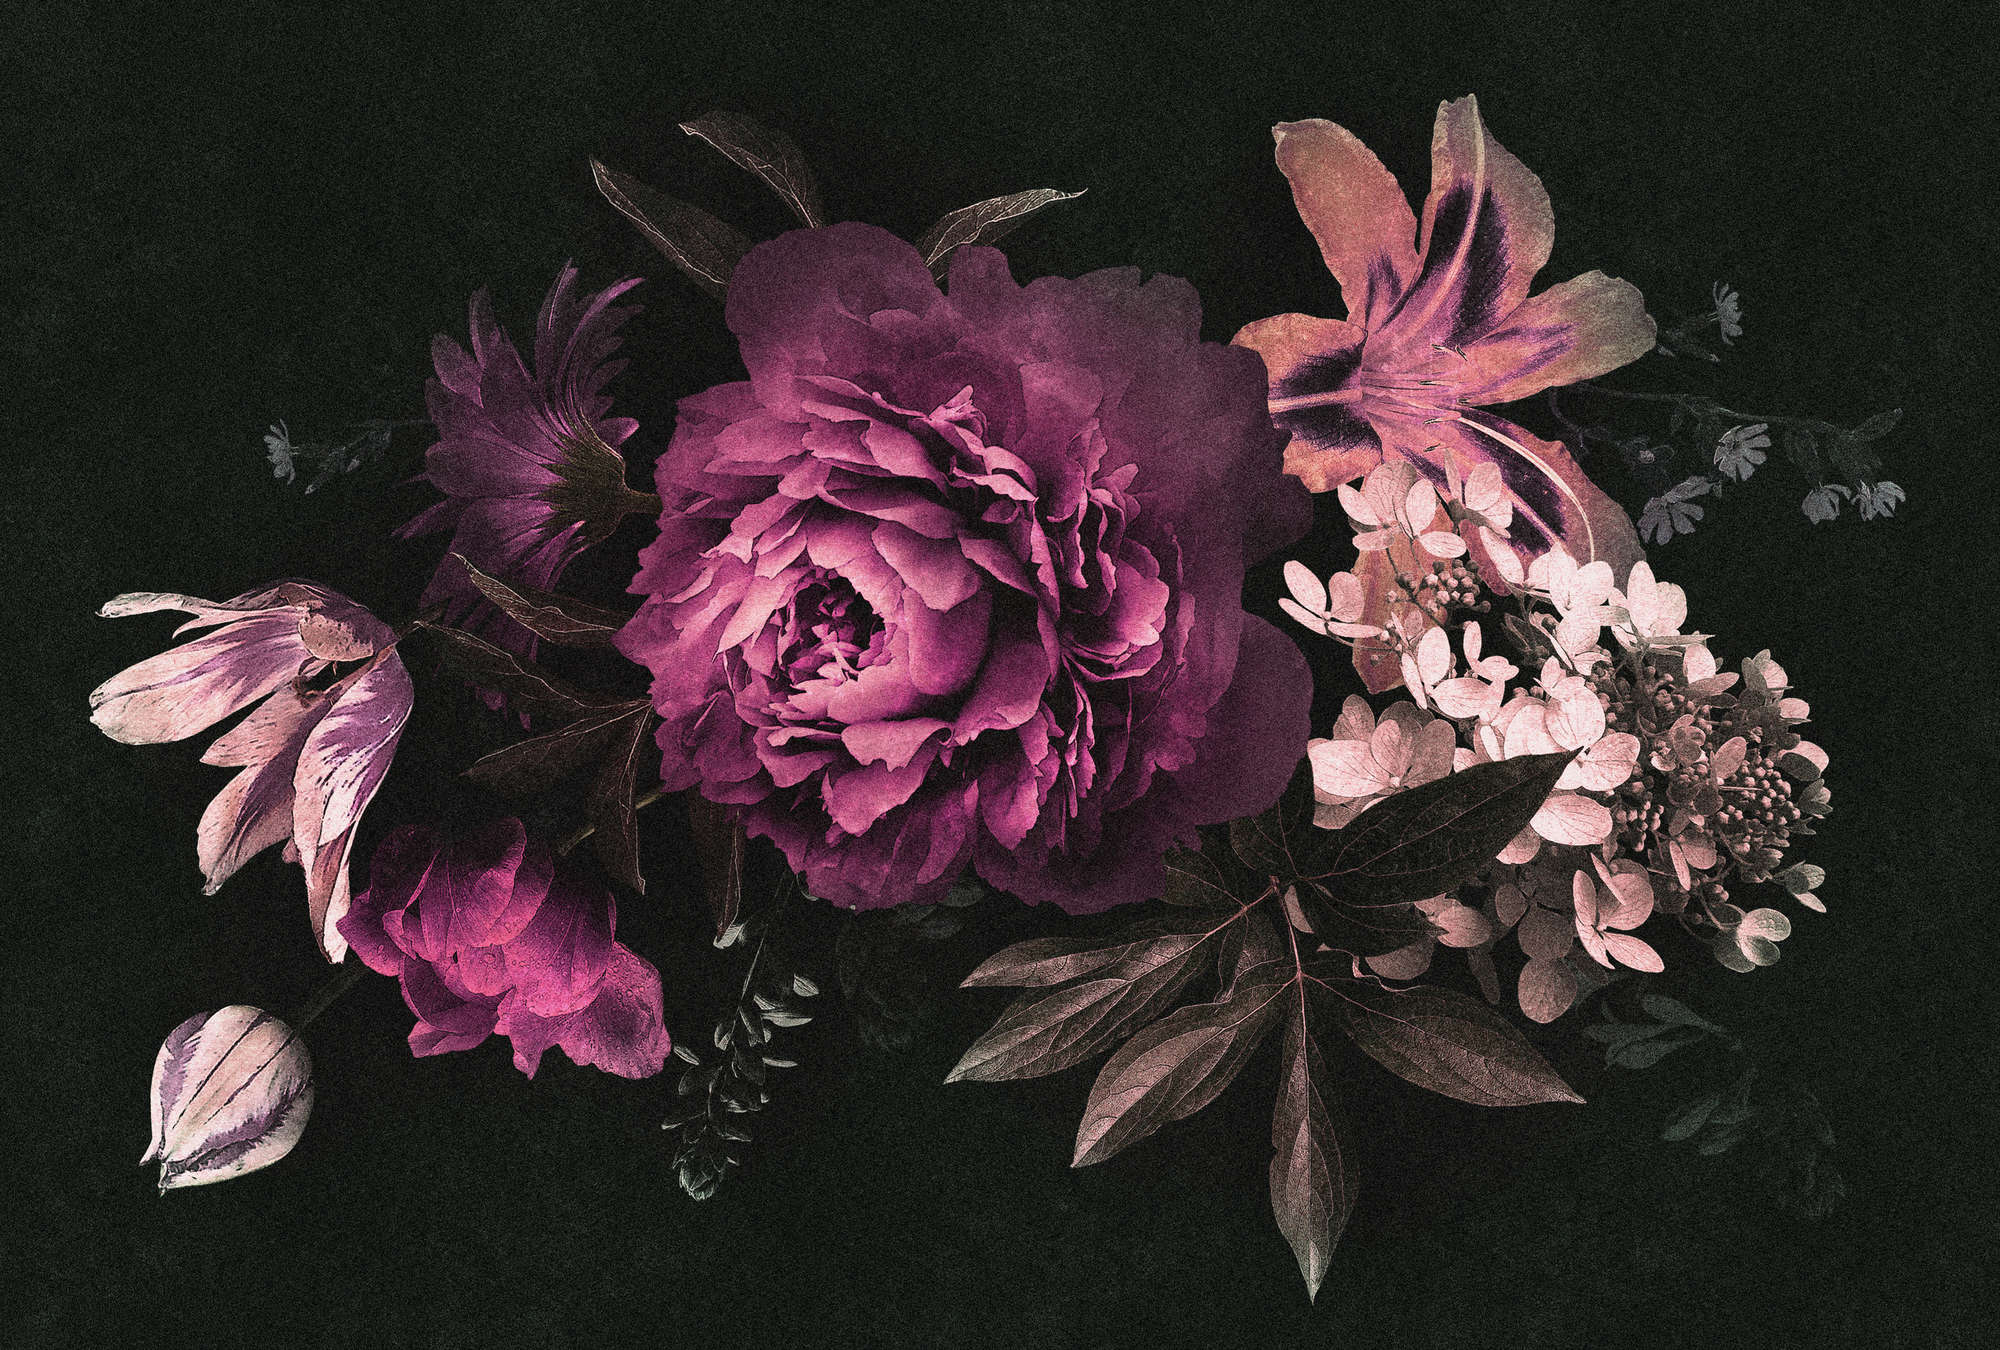             Drama queen 3 - Digital behang romantisch boeket bloemen - Kartonnen structuur - Roze, Zwart | Matte gladde vlieseline
        